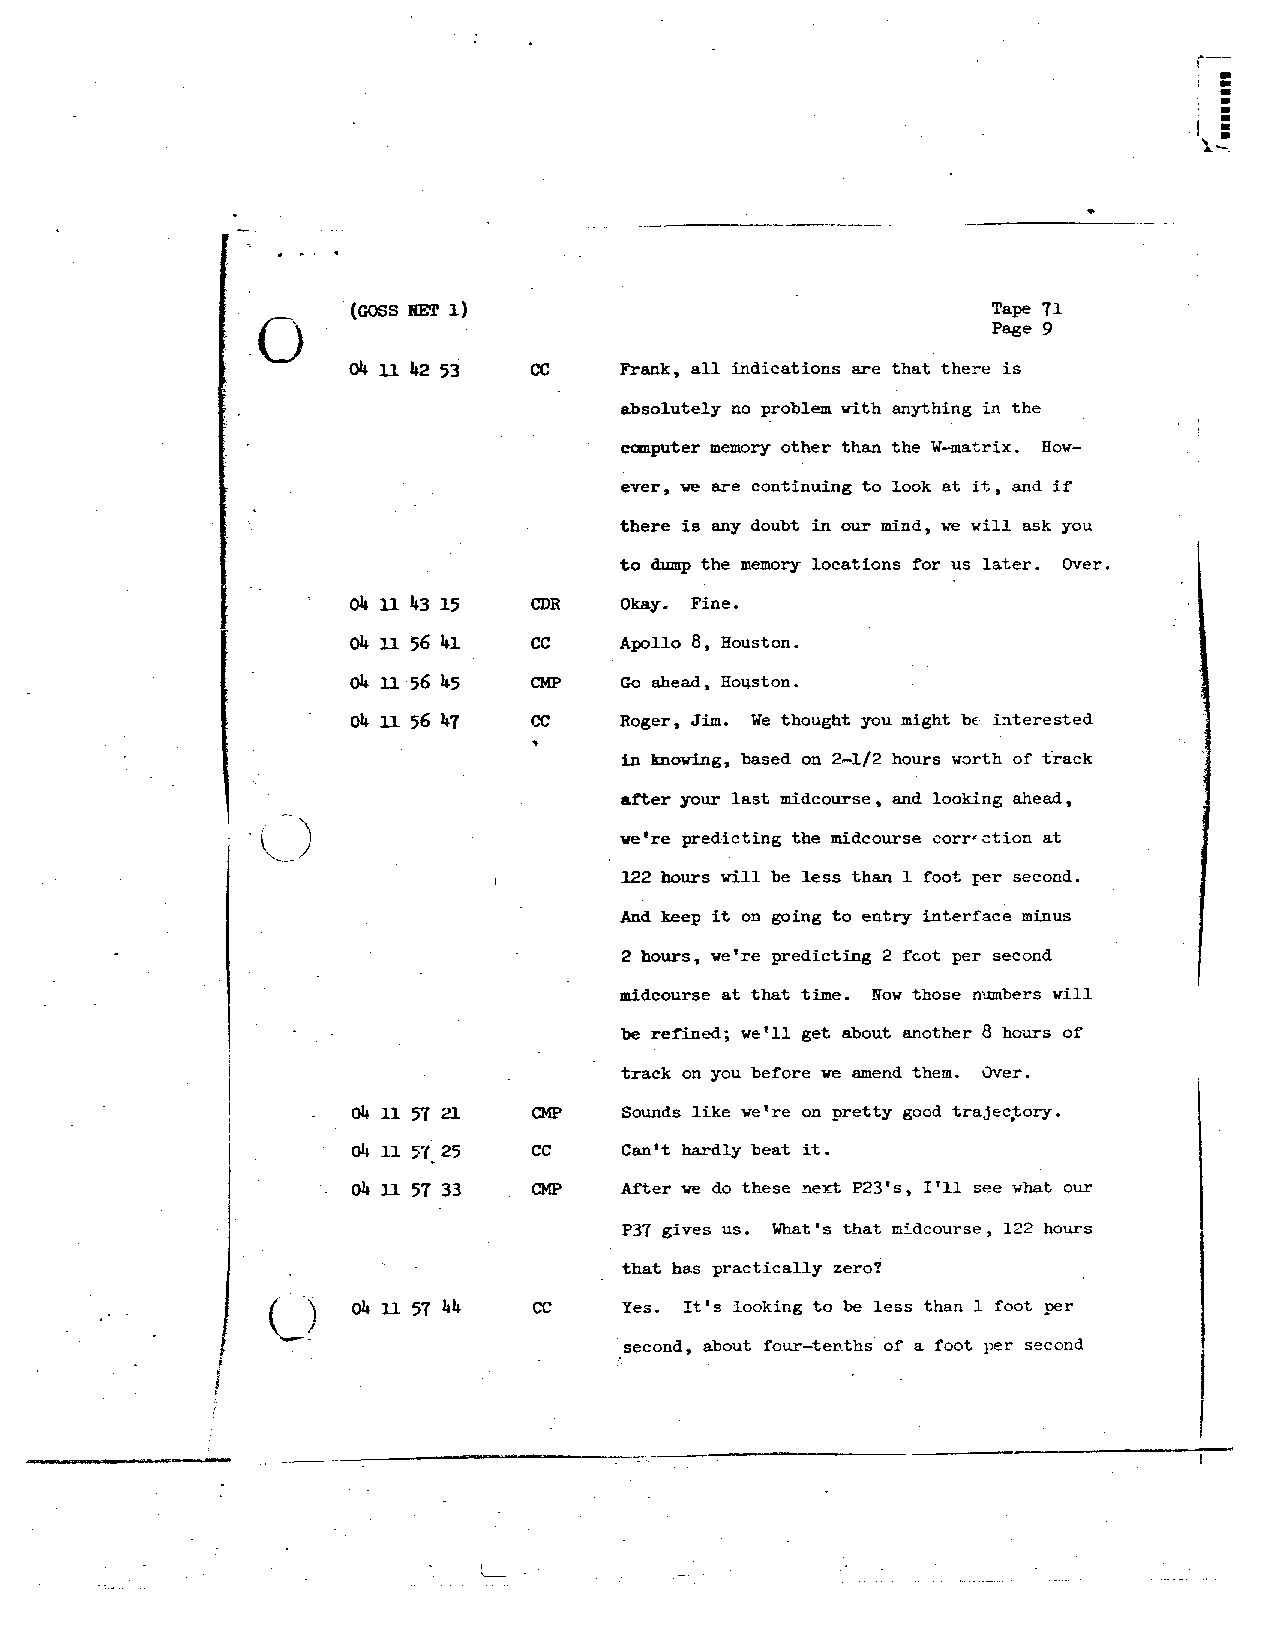 Page 572 of Apollo 8’s original transcript